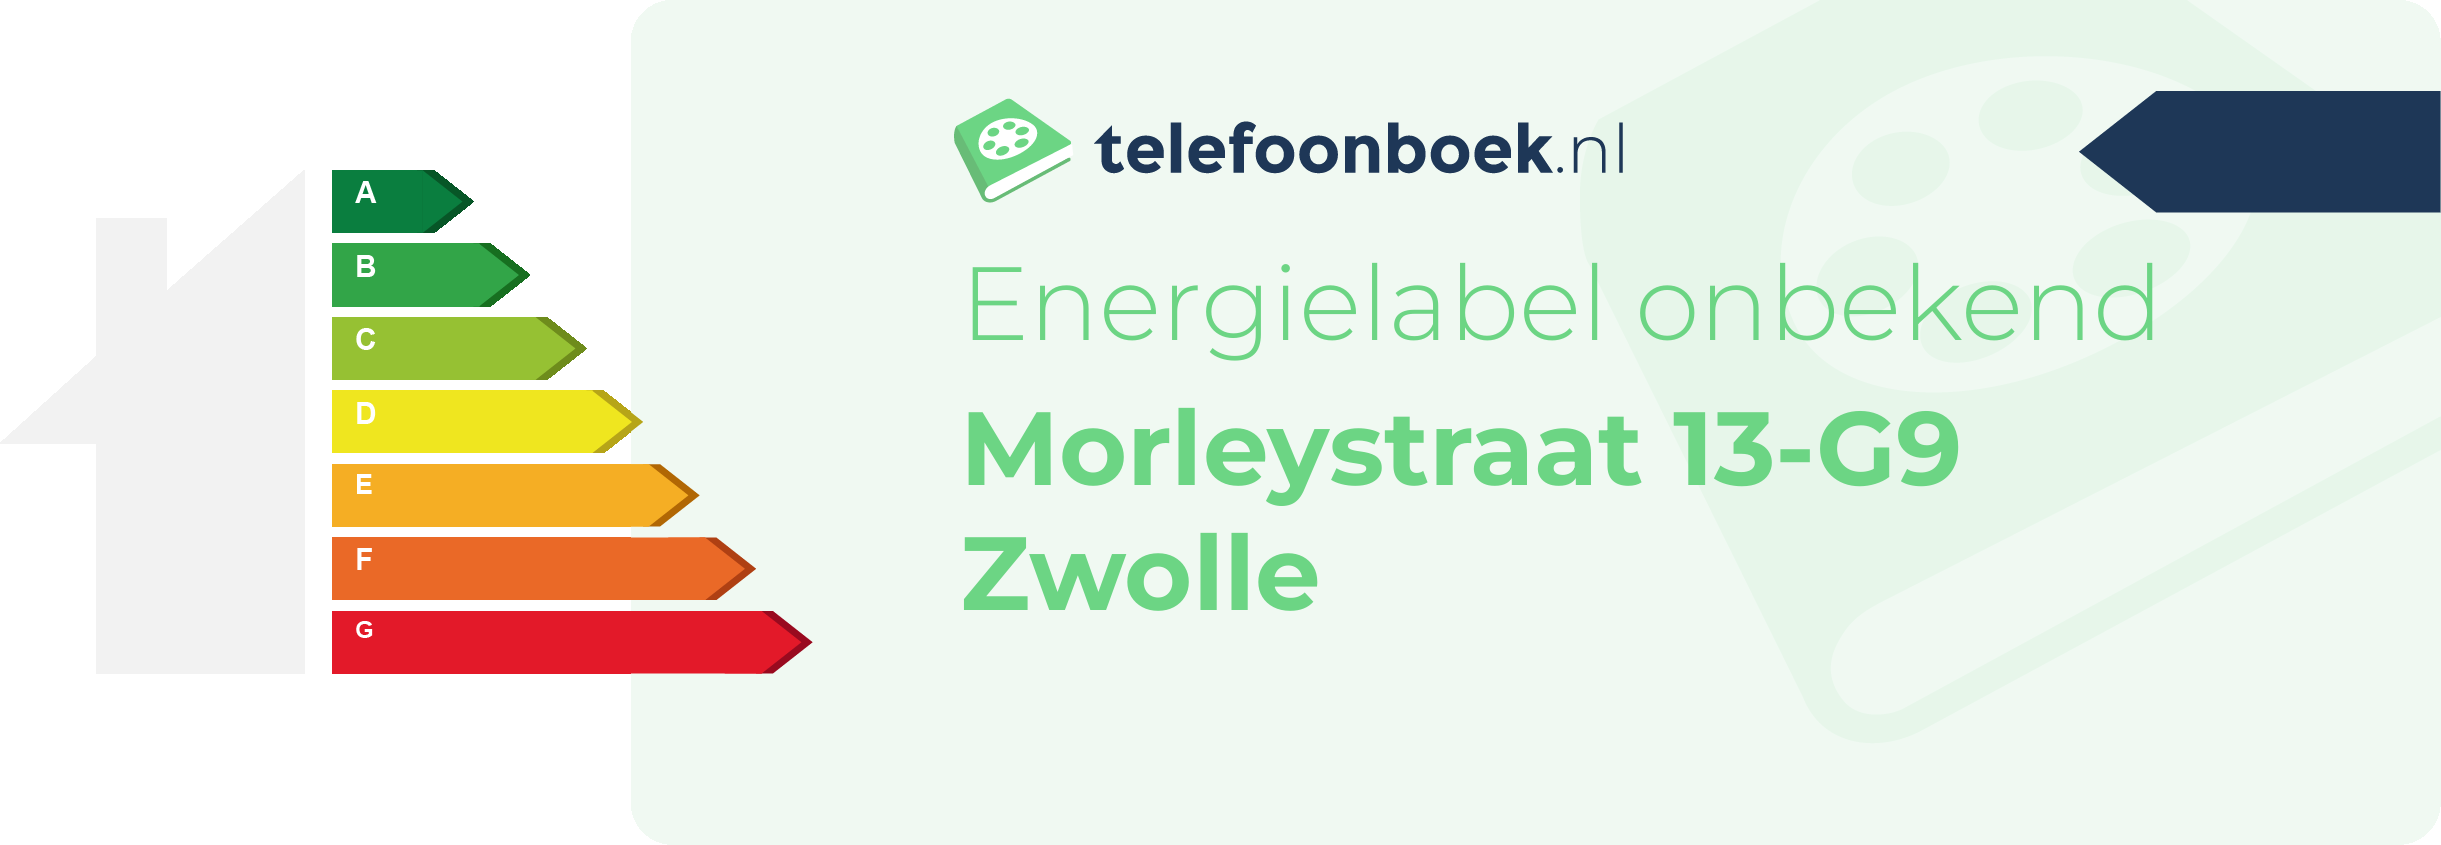 Energielabel Morleystraat 13-G9 Zwolle